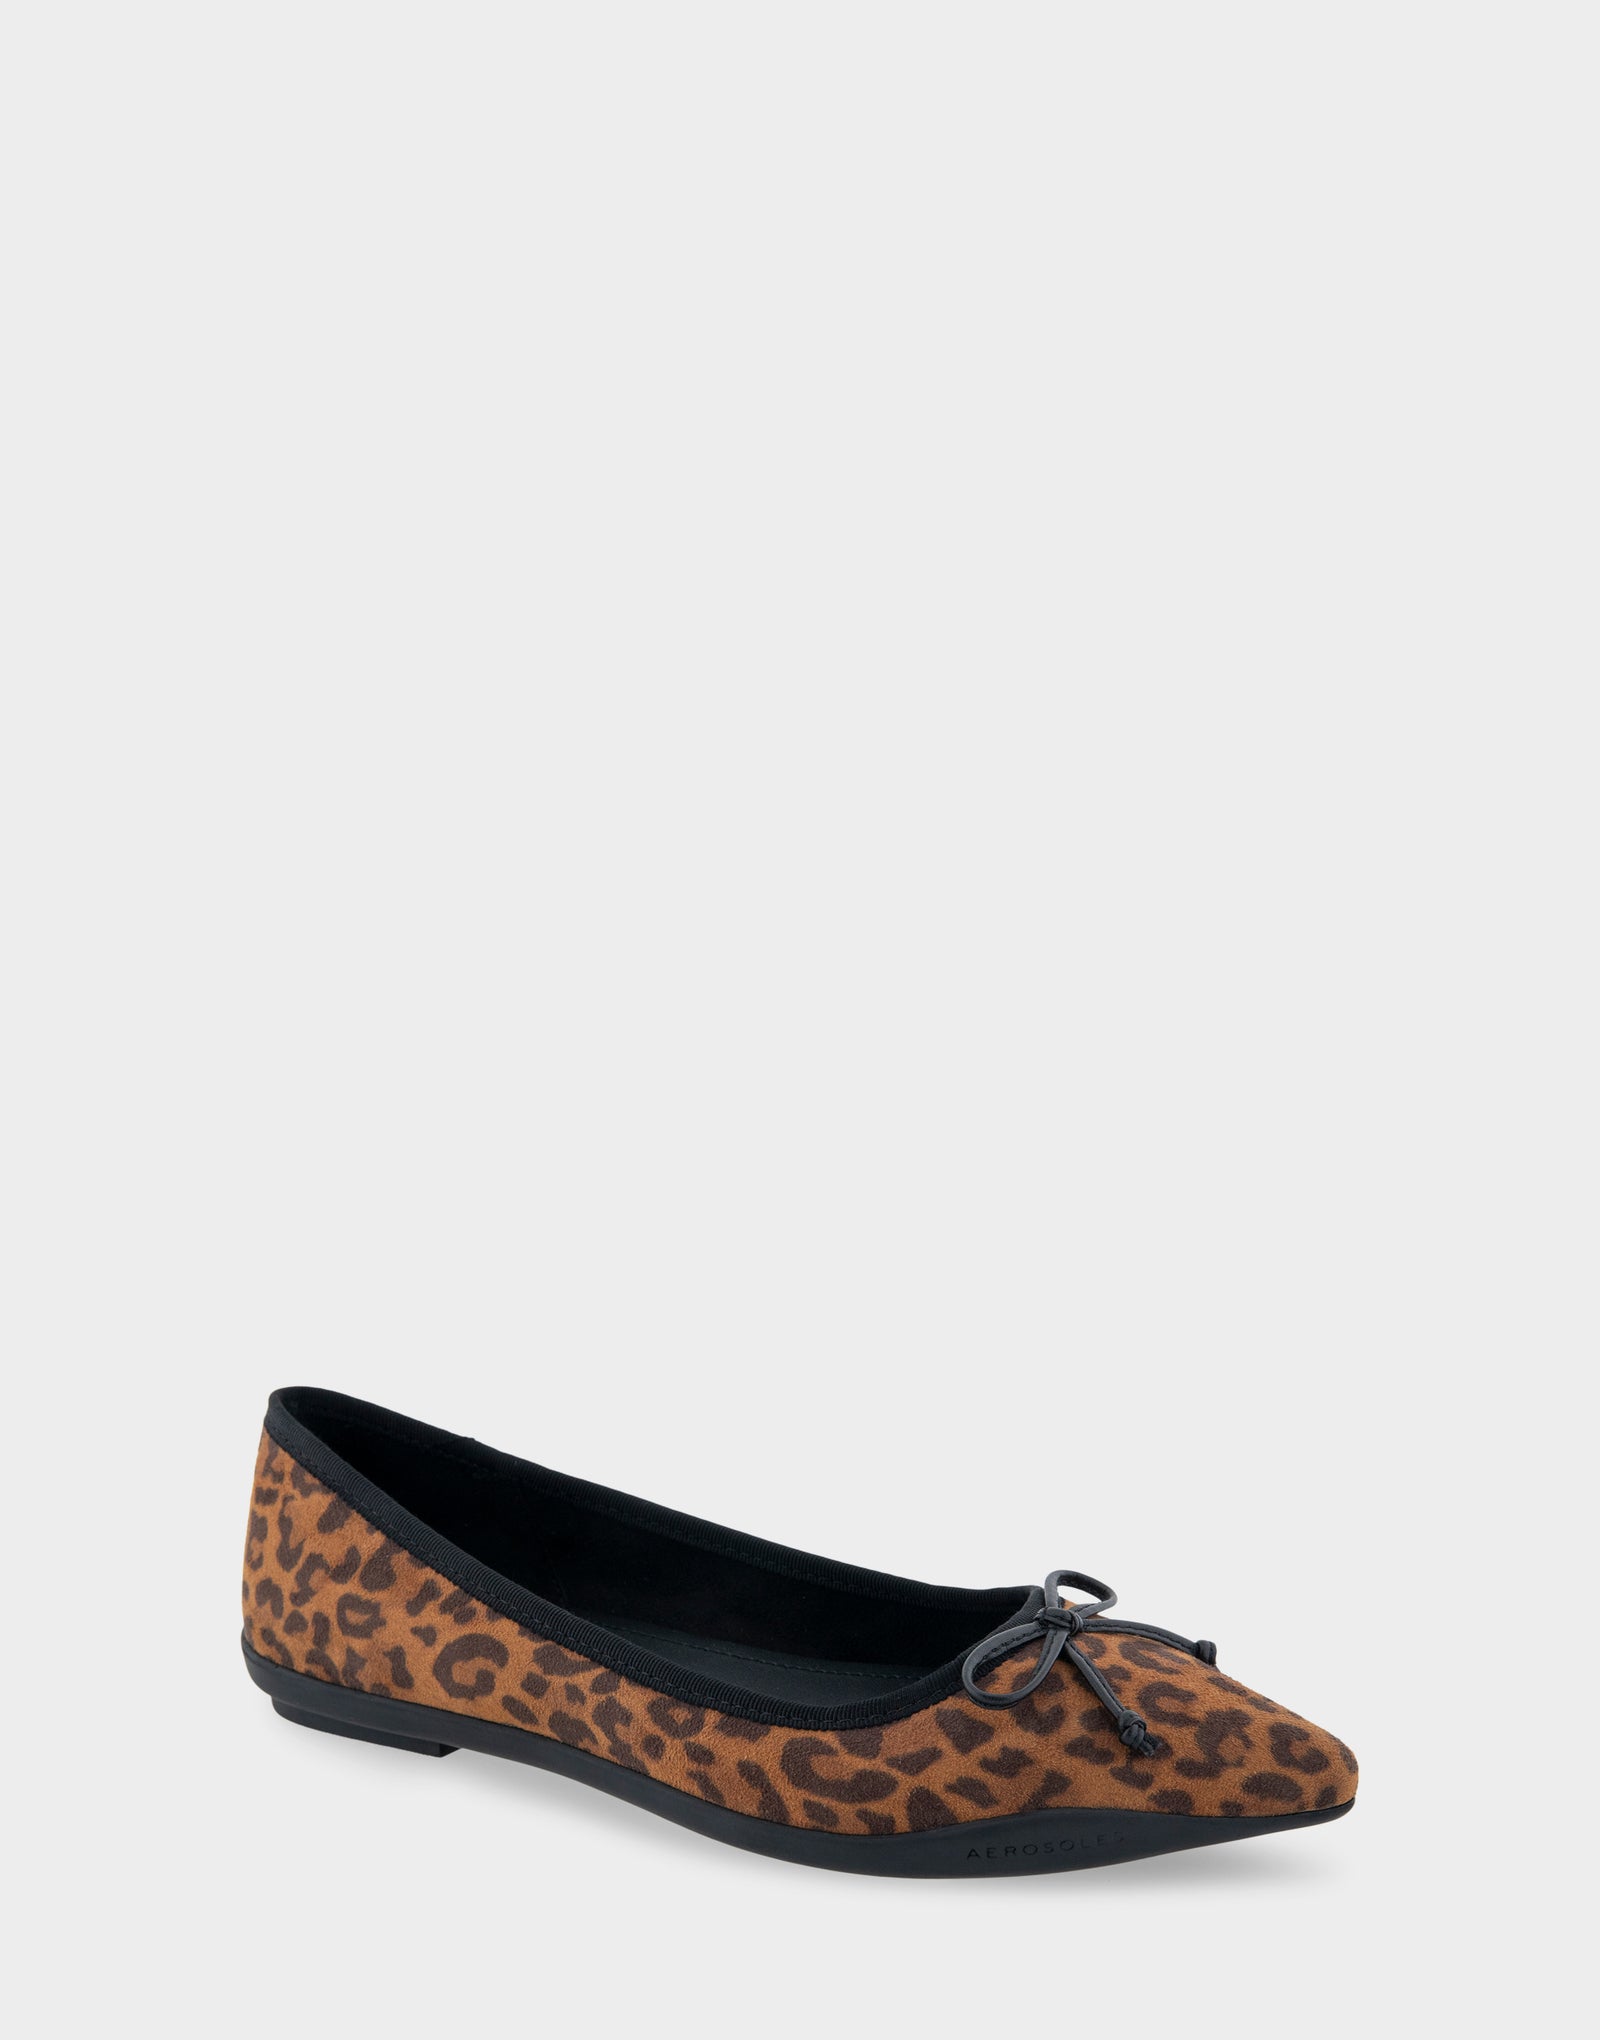 Women's Point Toe Flat in Leopard Print